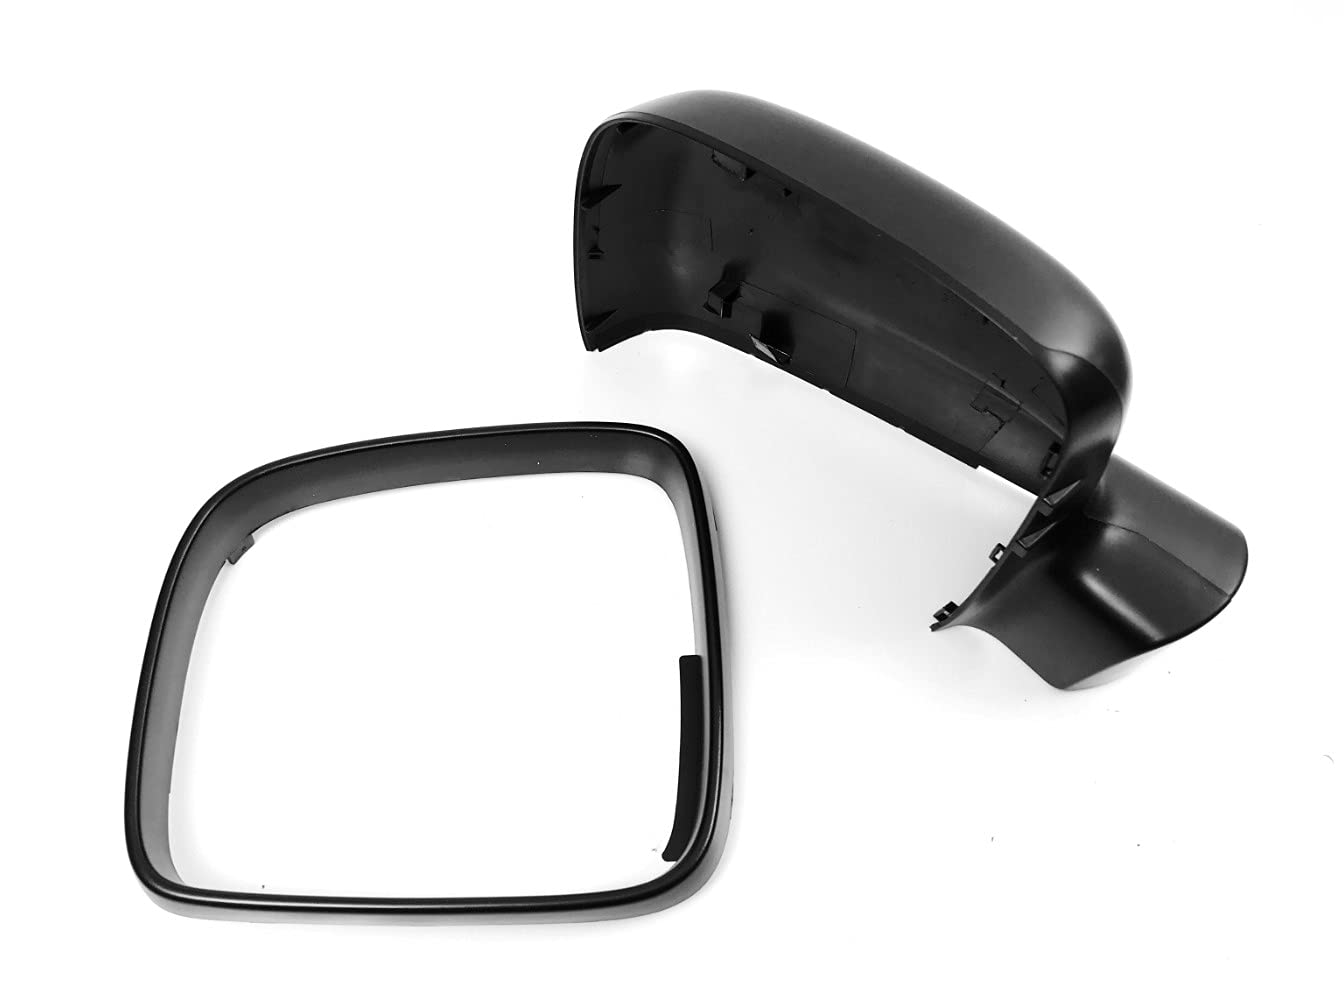 HZ-DESIGN kompatibel mit/Ersatz für Aussenspiegel Abdeckung Spiegelkappe Rahmen links Gehäuse schwarz passend für VW T5 und VW Caddy 03-09 von HZ-DESIGN